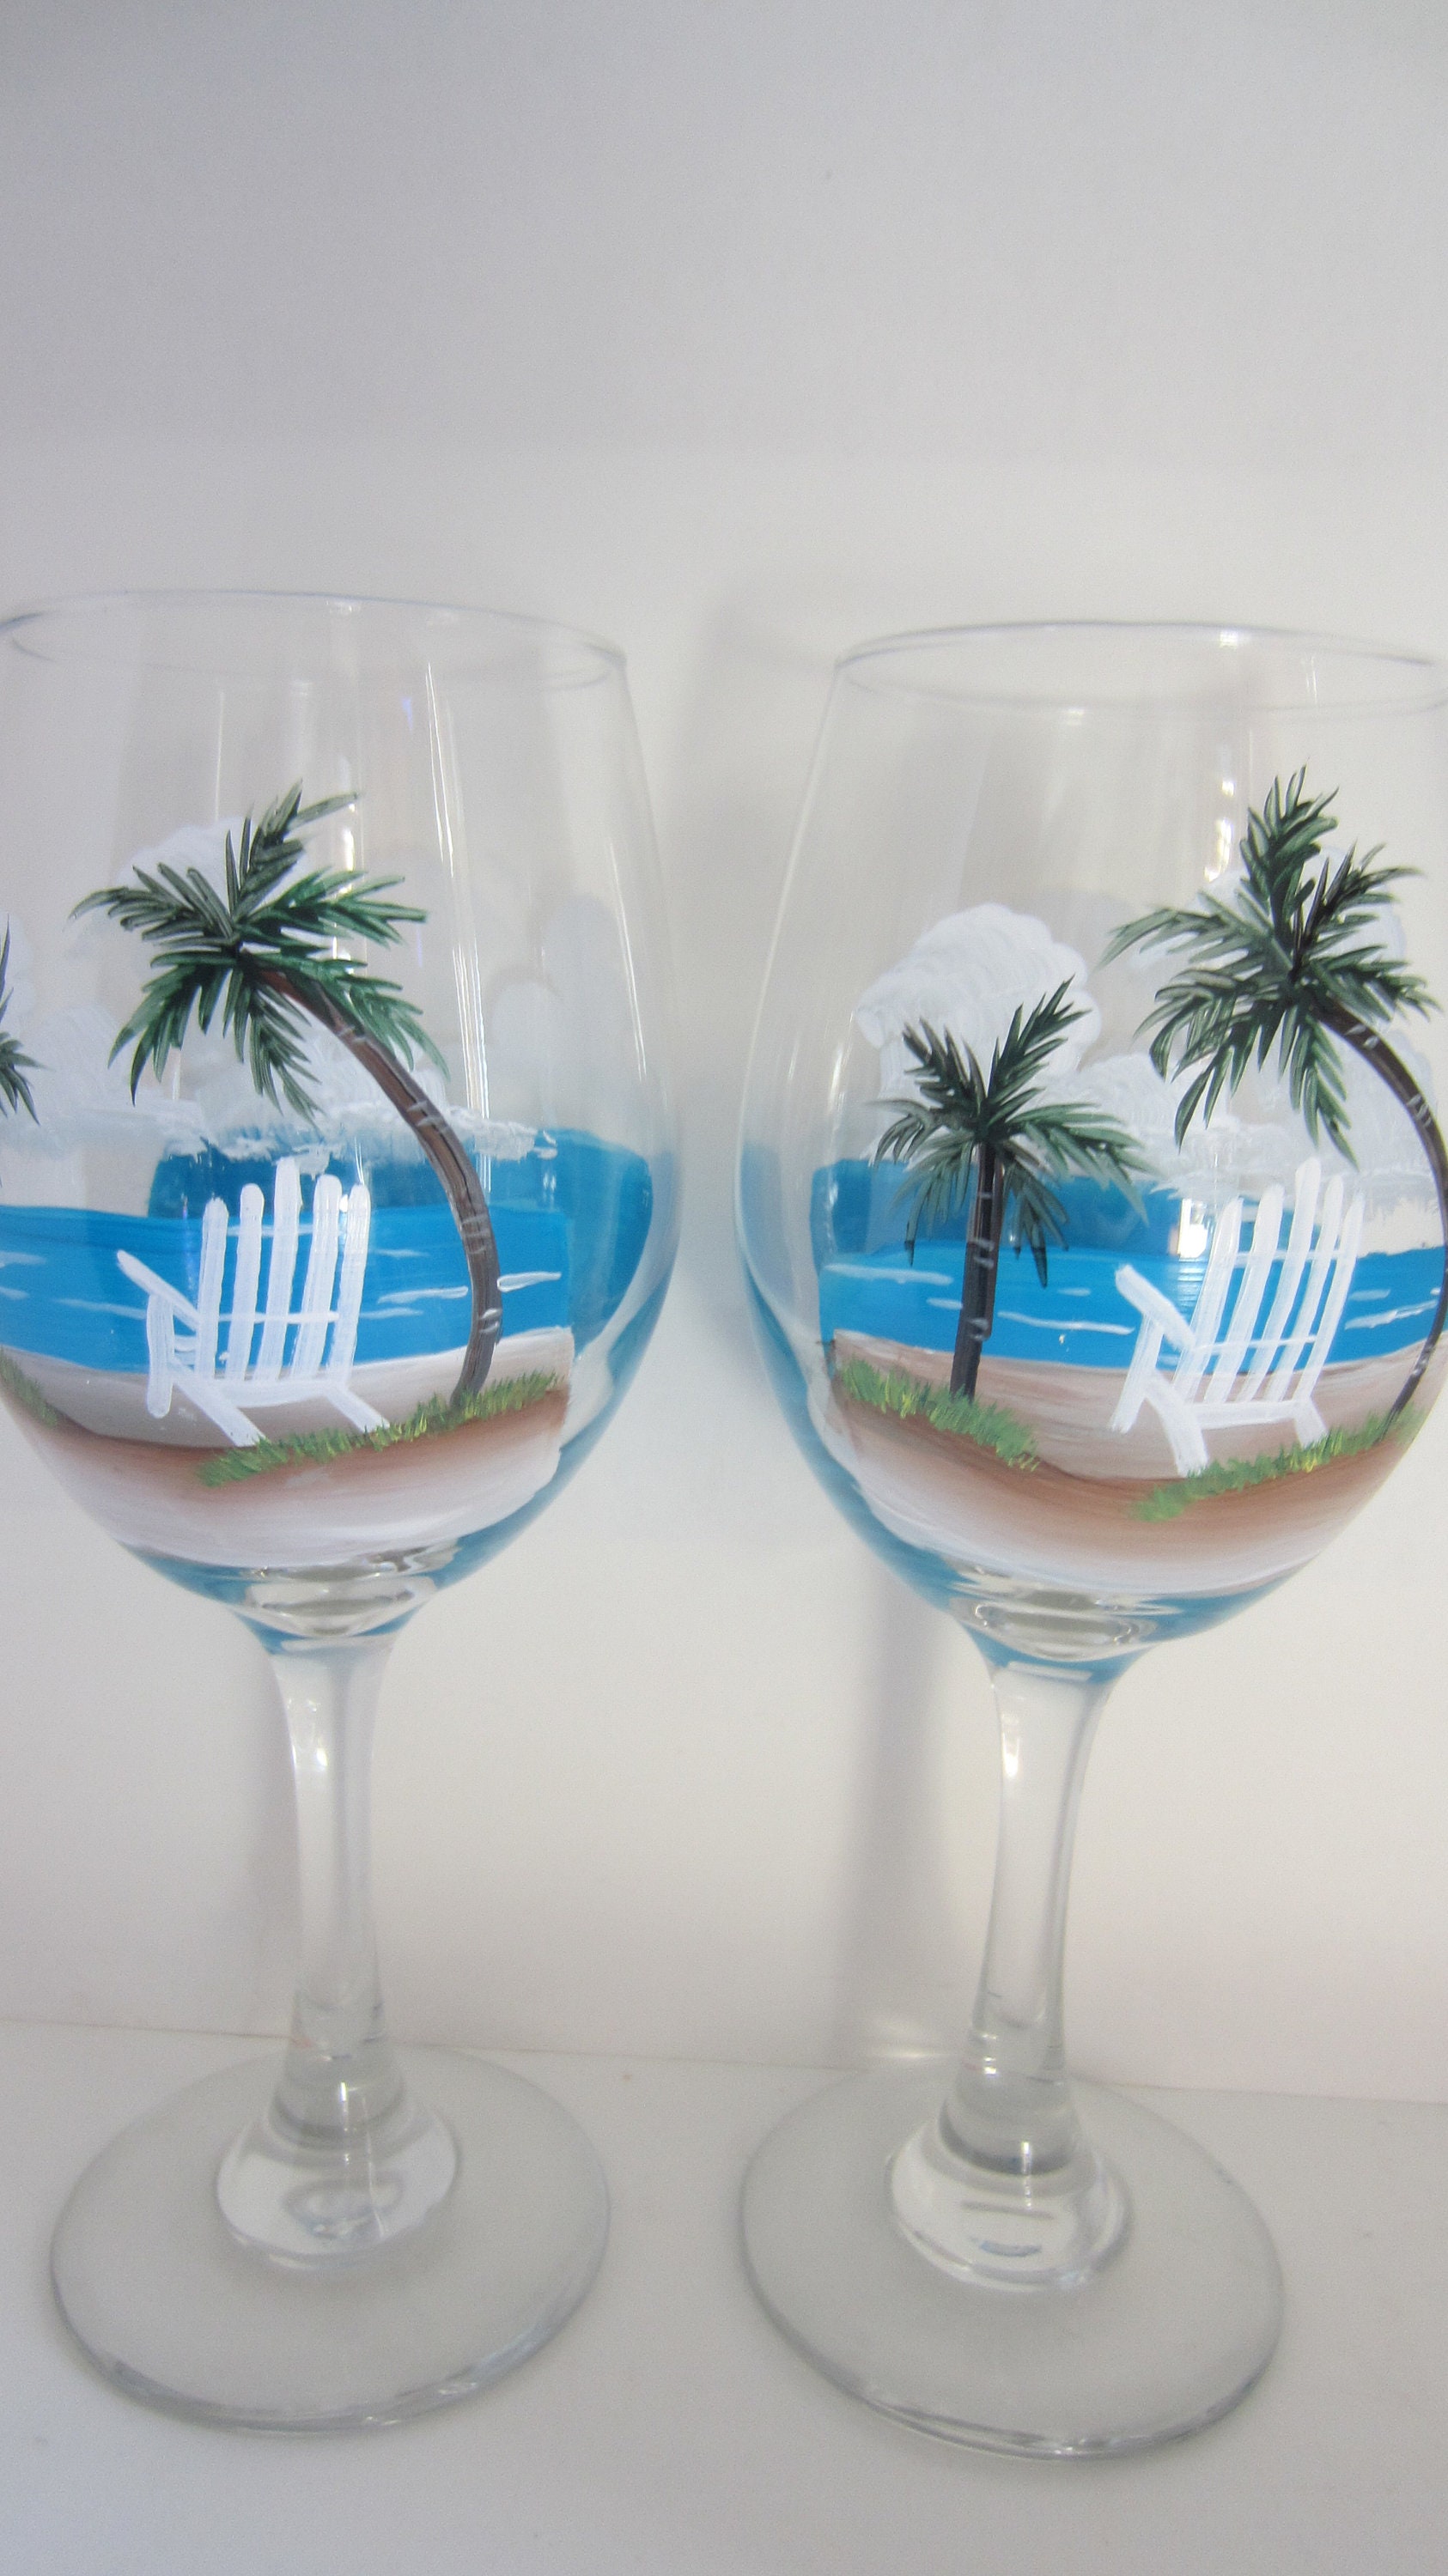 Splash Hand Painted Wine Glasses set of 6 